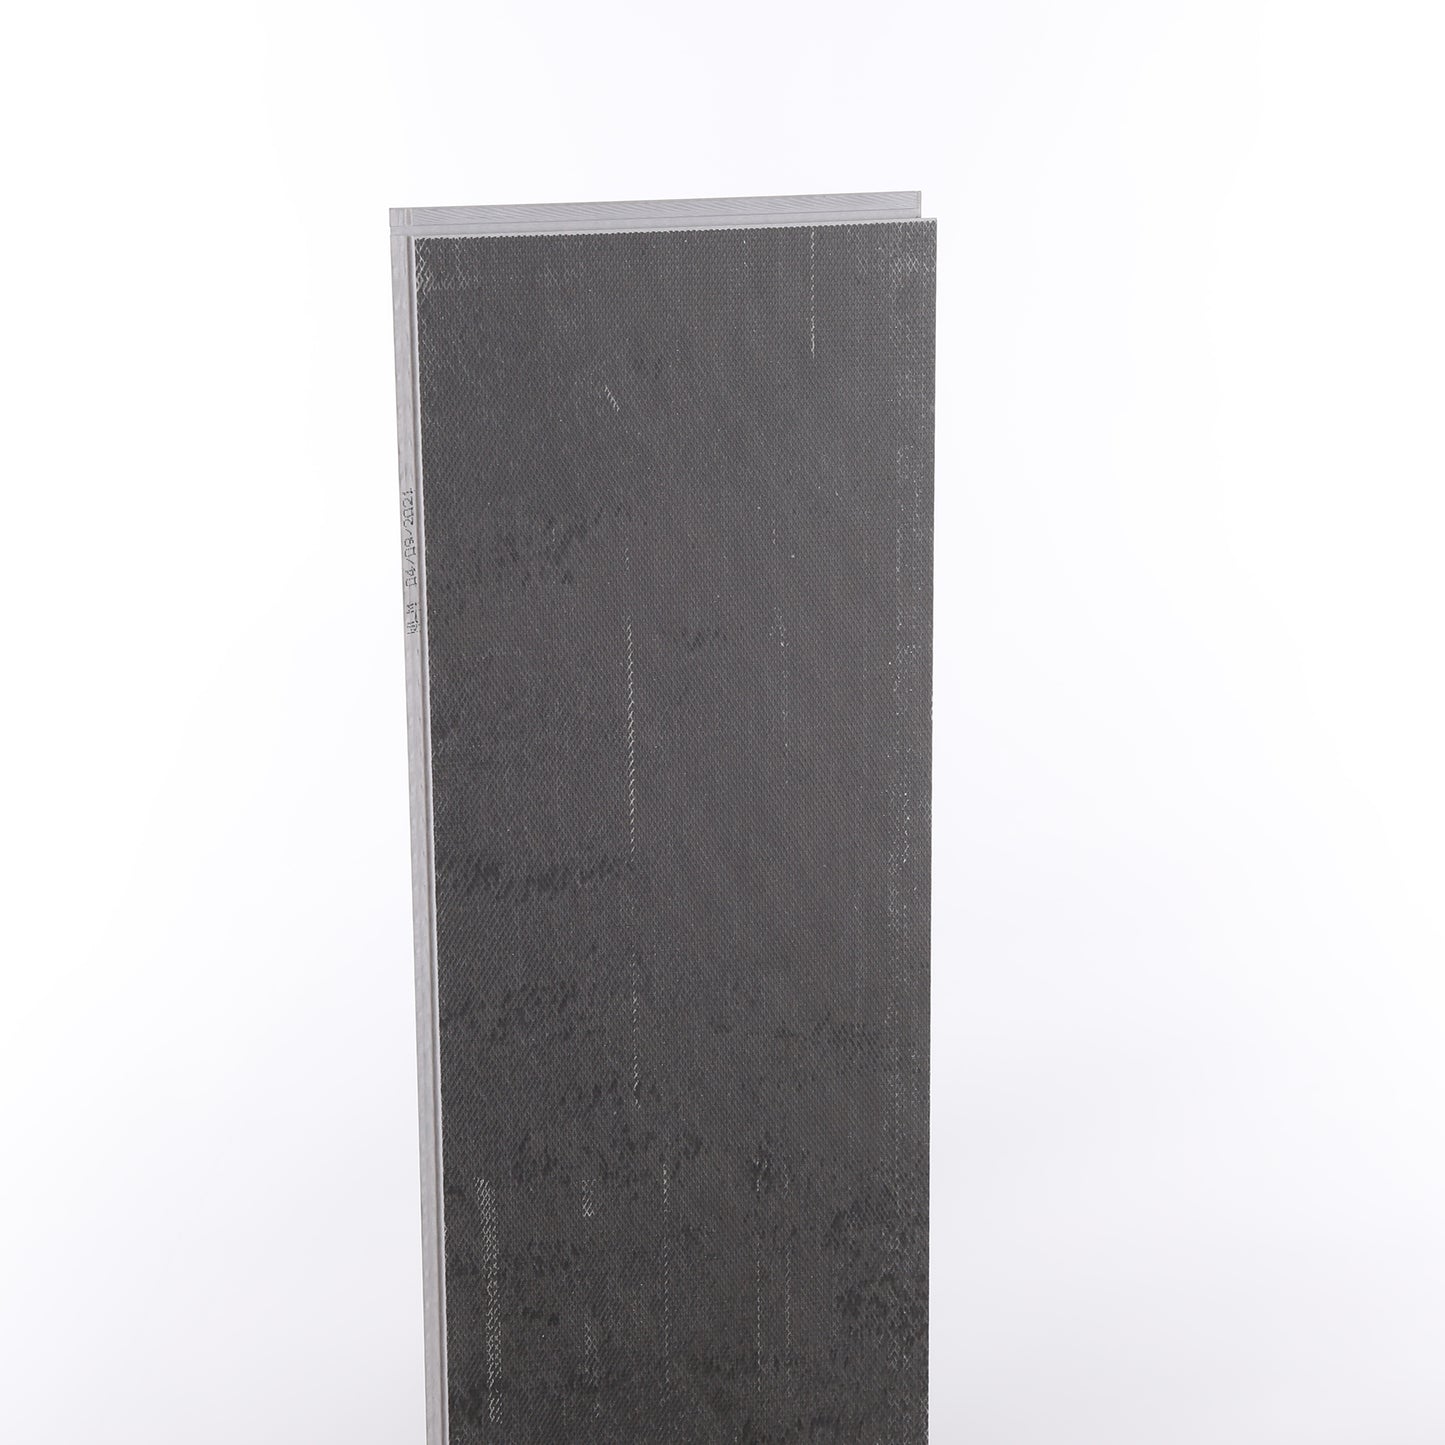 4mm Umber Oak HDPC® Waterproof Luxury Vinyl Plank Flooring 9.13 in. Wide x 48 in. Long